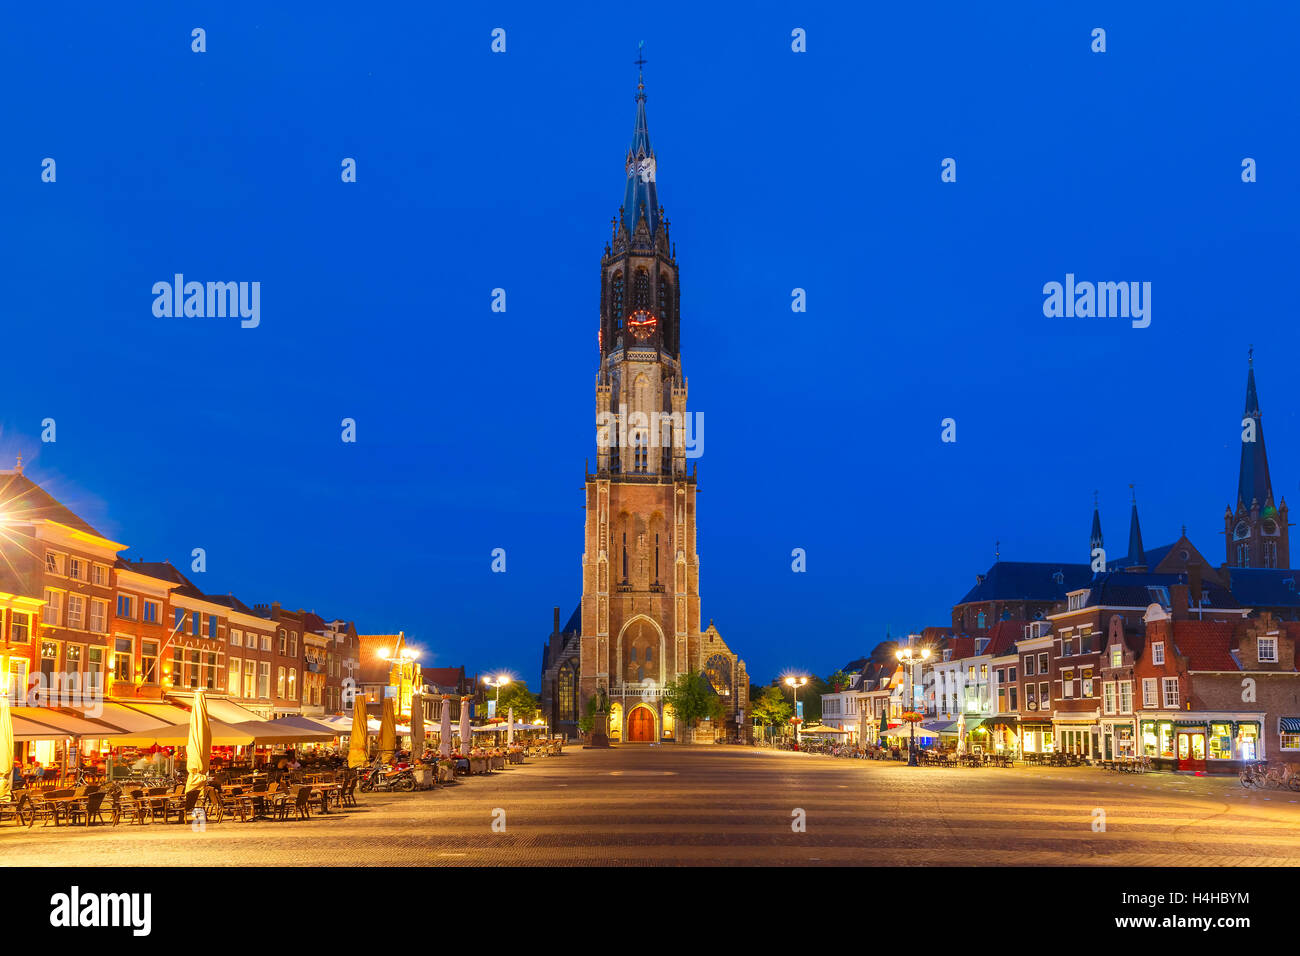 La noche la plaza Markt, Delft, Países Bajos Foto de stock